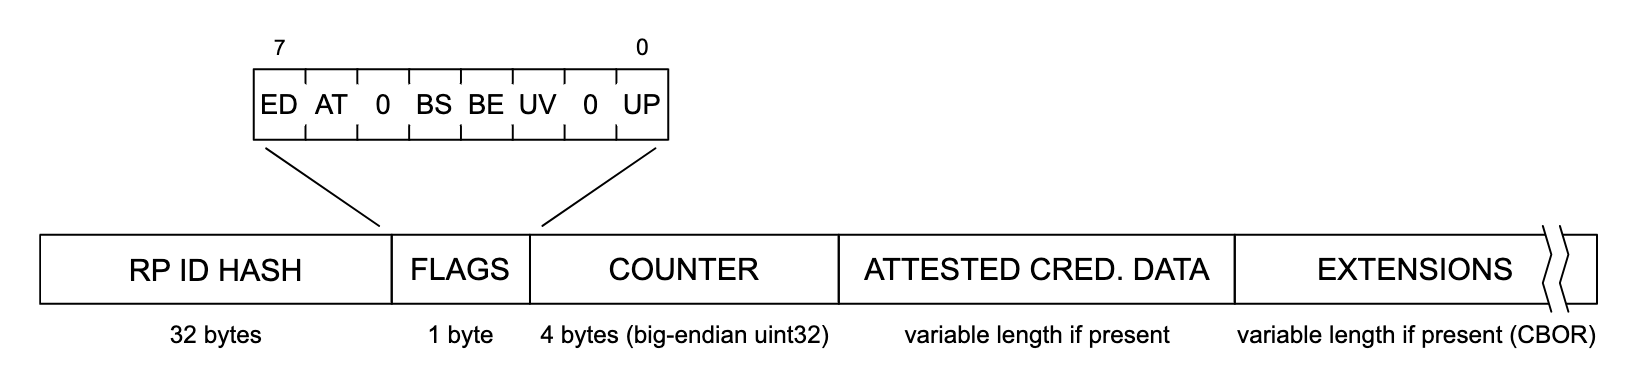 Representação da estrutura de dados de autenticação. Da esquerda para a direita, cada seção da estrutura de dados lê &quot;RP ID HASH&quot; (32 bytes), &quot;FLAGS&quot; (1 byte), &quot;COUNTER&quot; (4 bytes, big-endian uint32), &quot;ATTESTE CRED&quot;. DATA&quot; (tamanho variável, se presente) e &quot;EXTENSIONS&quot; (tamanho variável se presente (CBOR)). A seção &quot;FLAGS&quot; é expandida para mostrar uma lista de possíveis flags, rotuladas da esquerda para a direita: &quot;ED&quot;, &quot;AT&quot;, &quot;0&quot;, &quot;BS&quot;, &quot;BE&quot;, &quot;UV&quot;, &quot;0&quot; e &quot;UP&quot;.